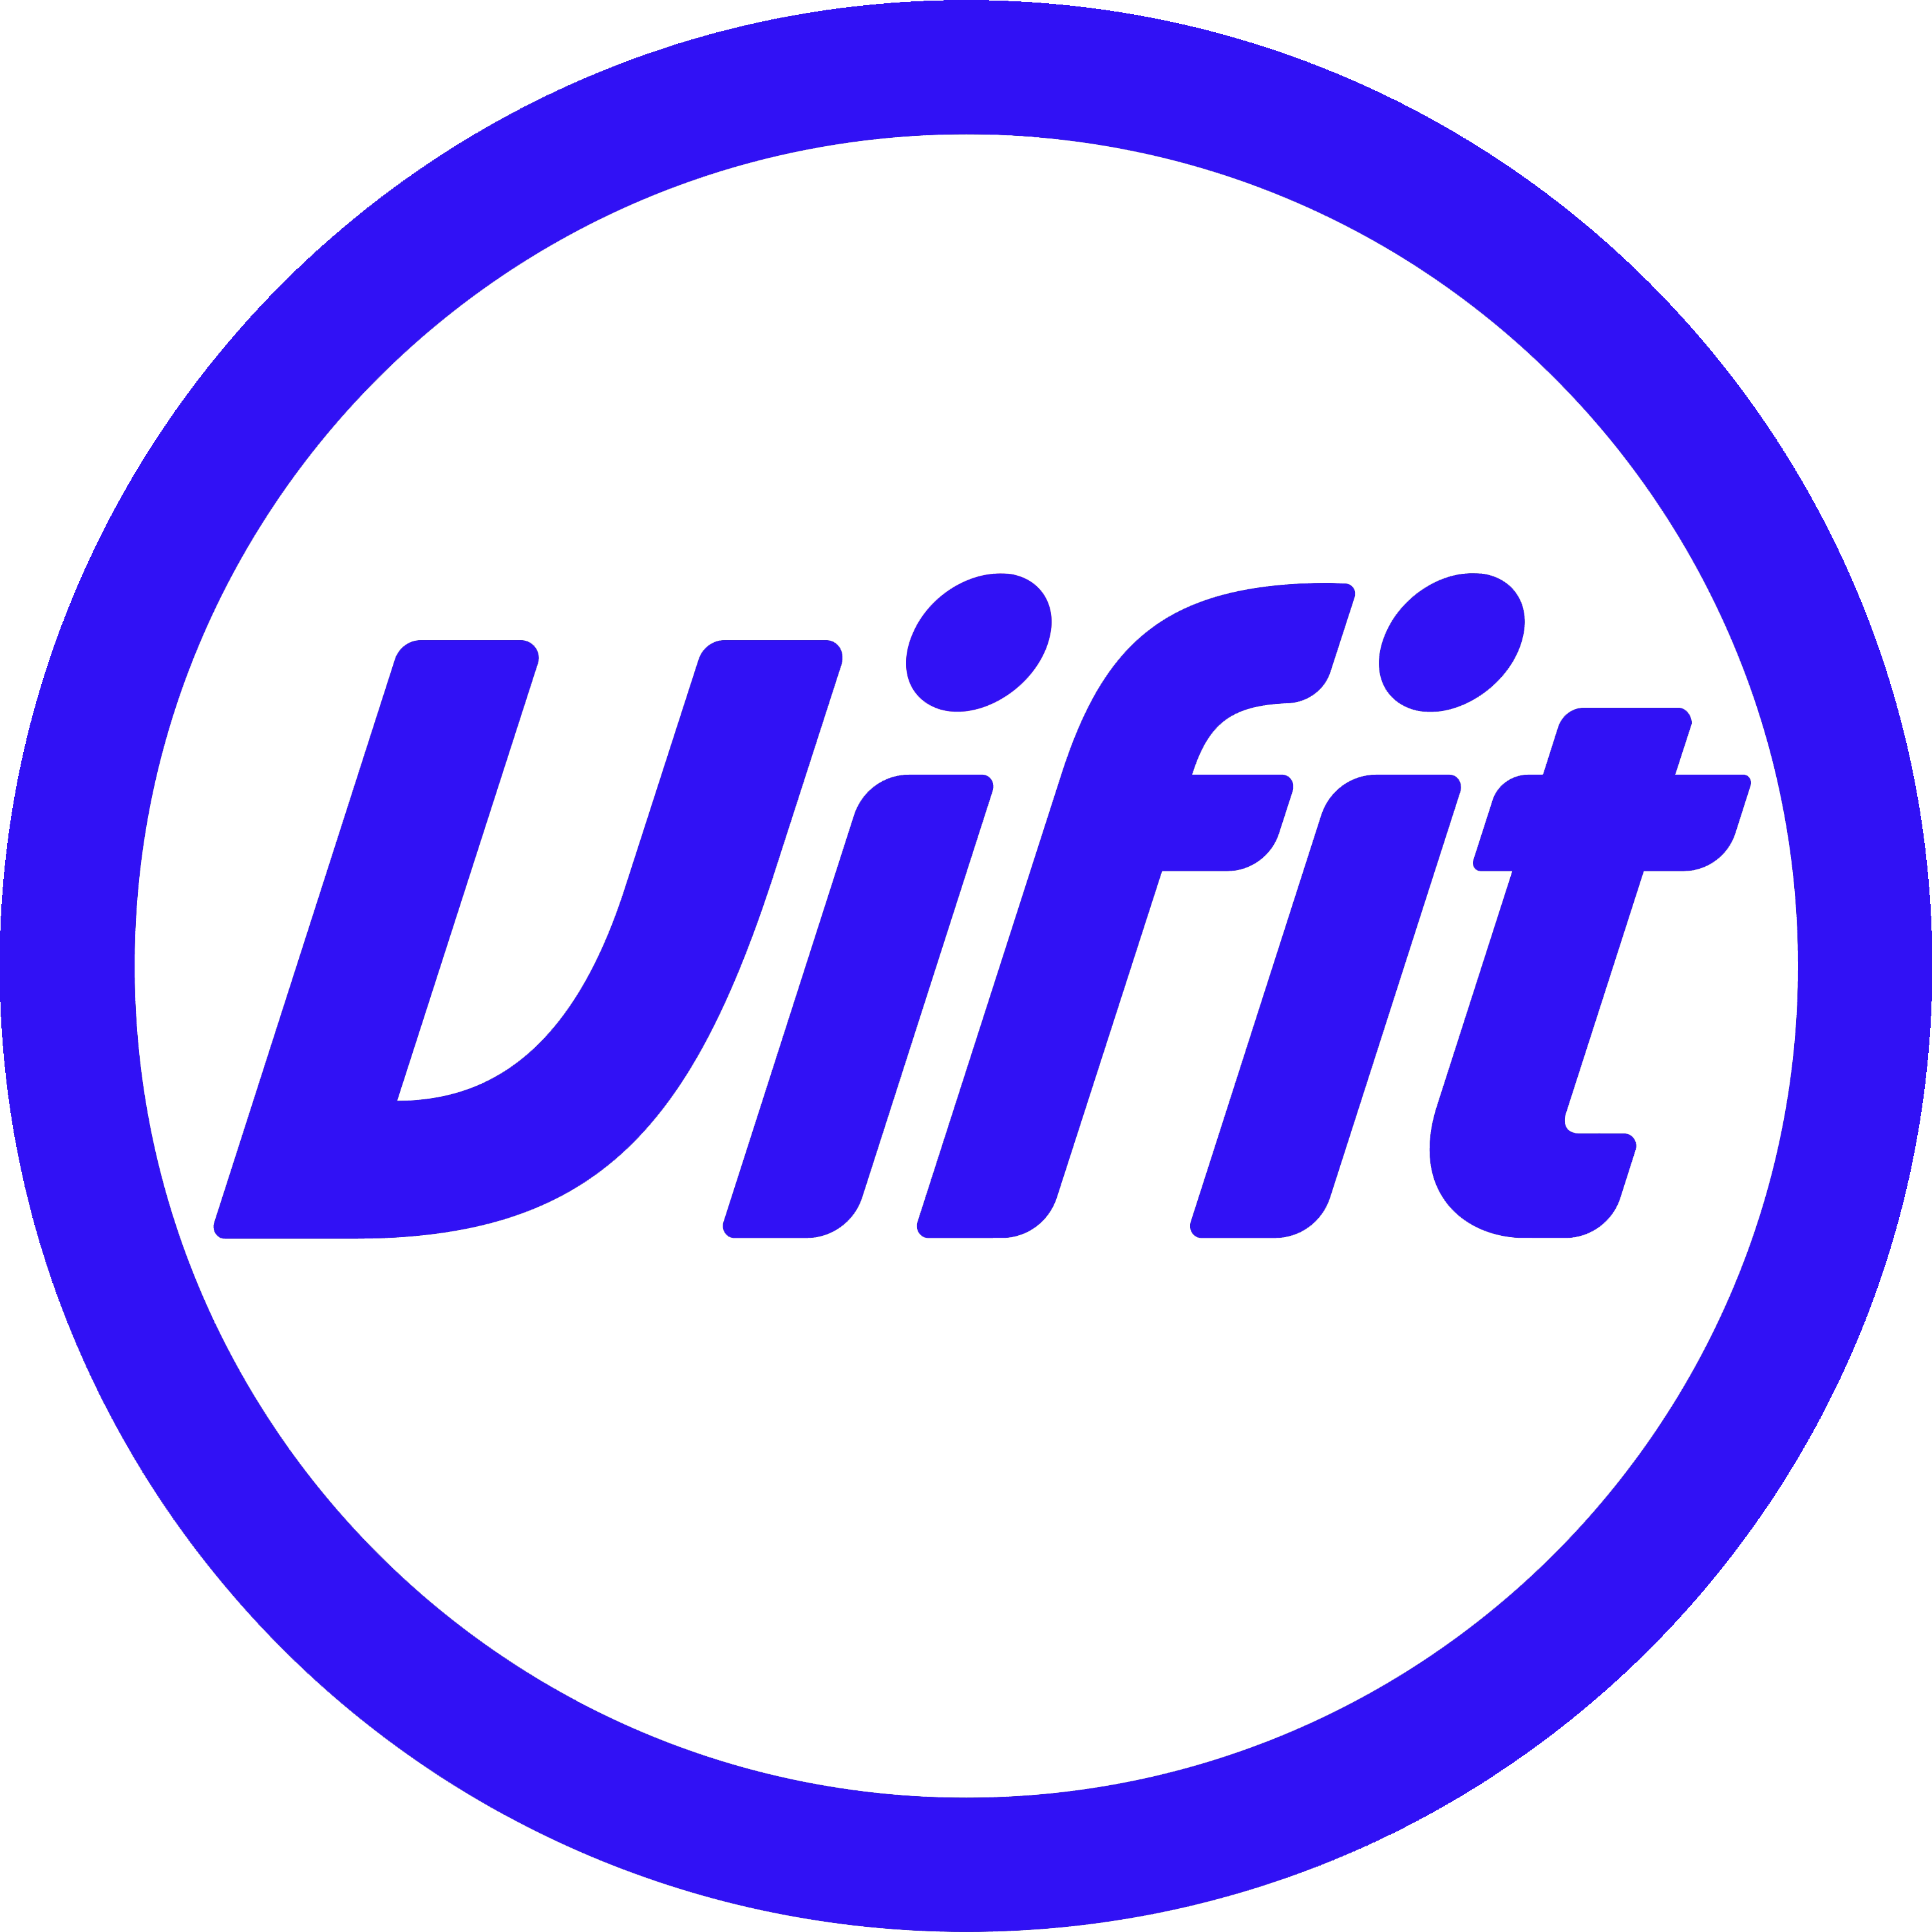 Vifit Logo Transparent Picture